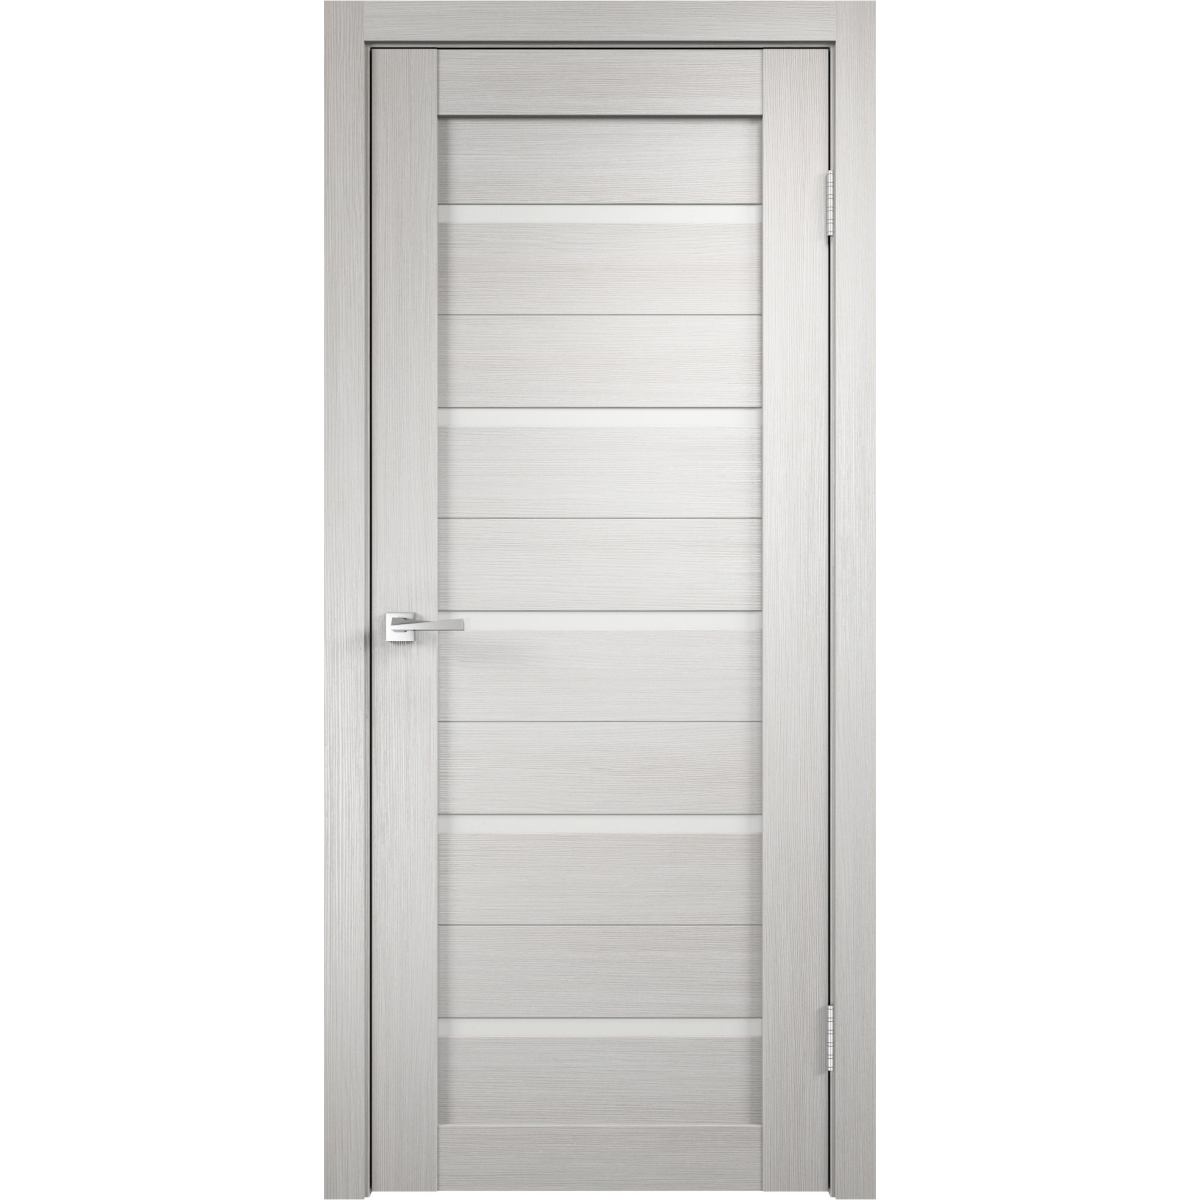 Дверь межкомнатная Дюплекс 90x200 см, ПВХ, цвет белёный дуб